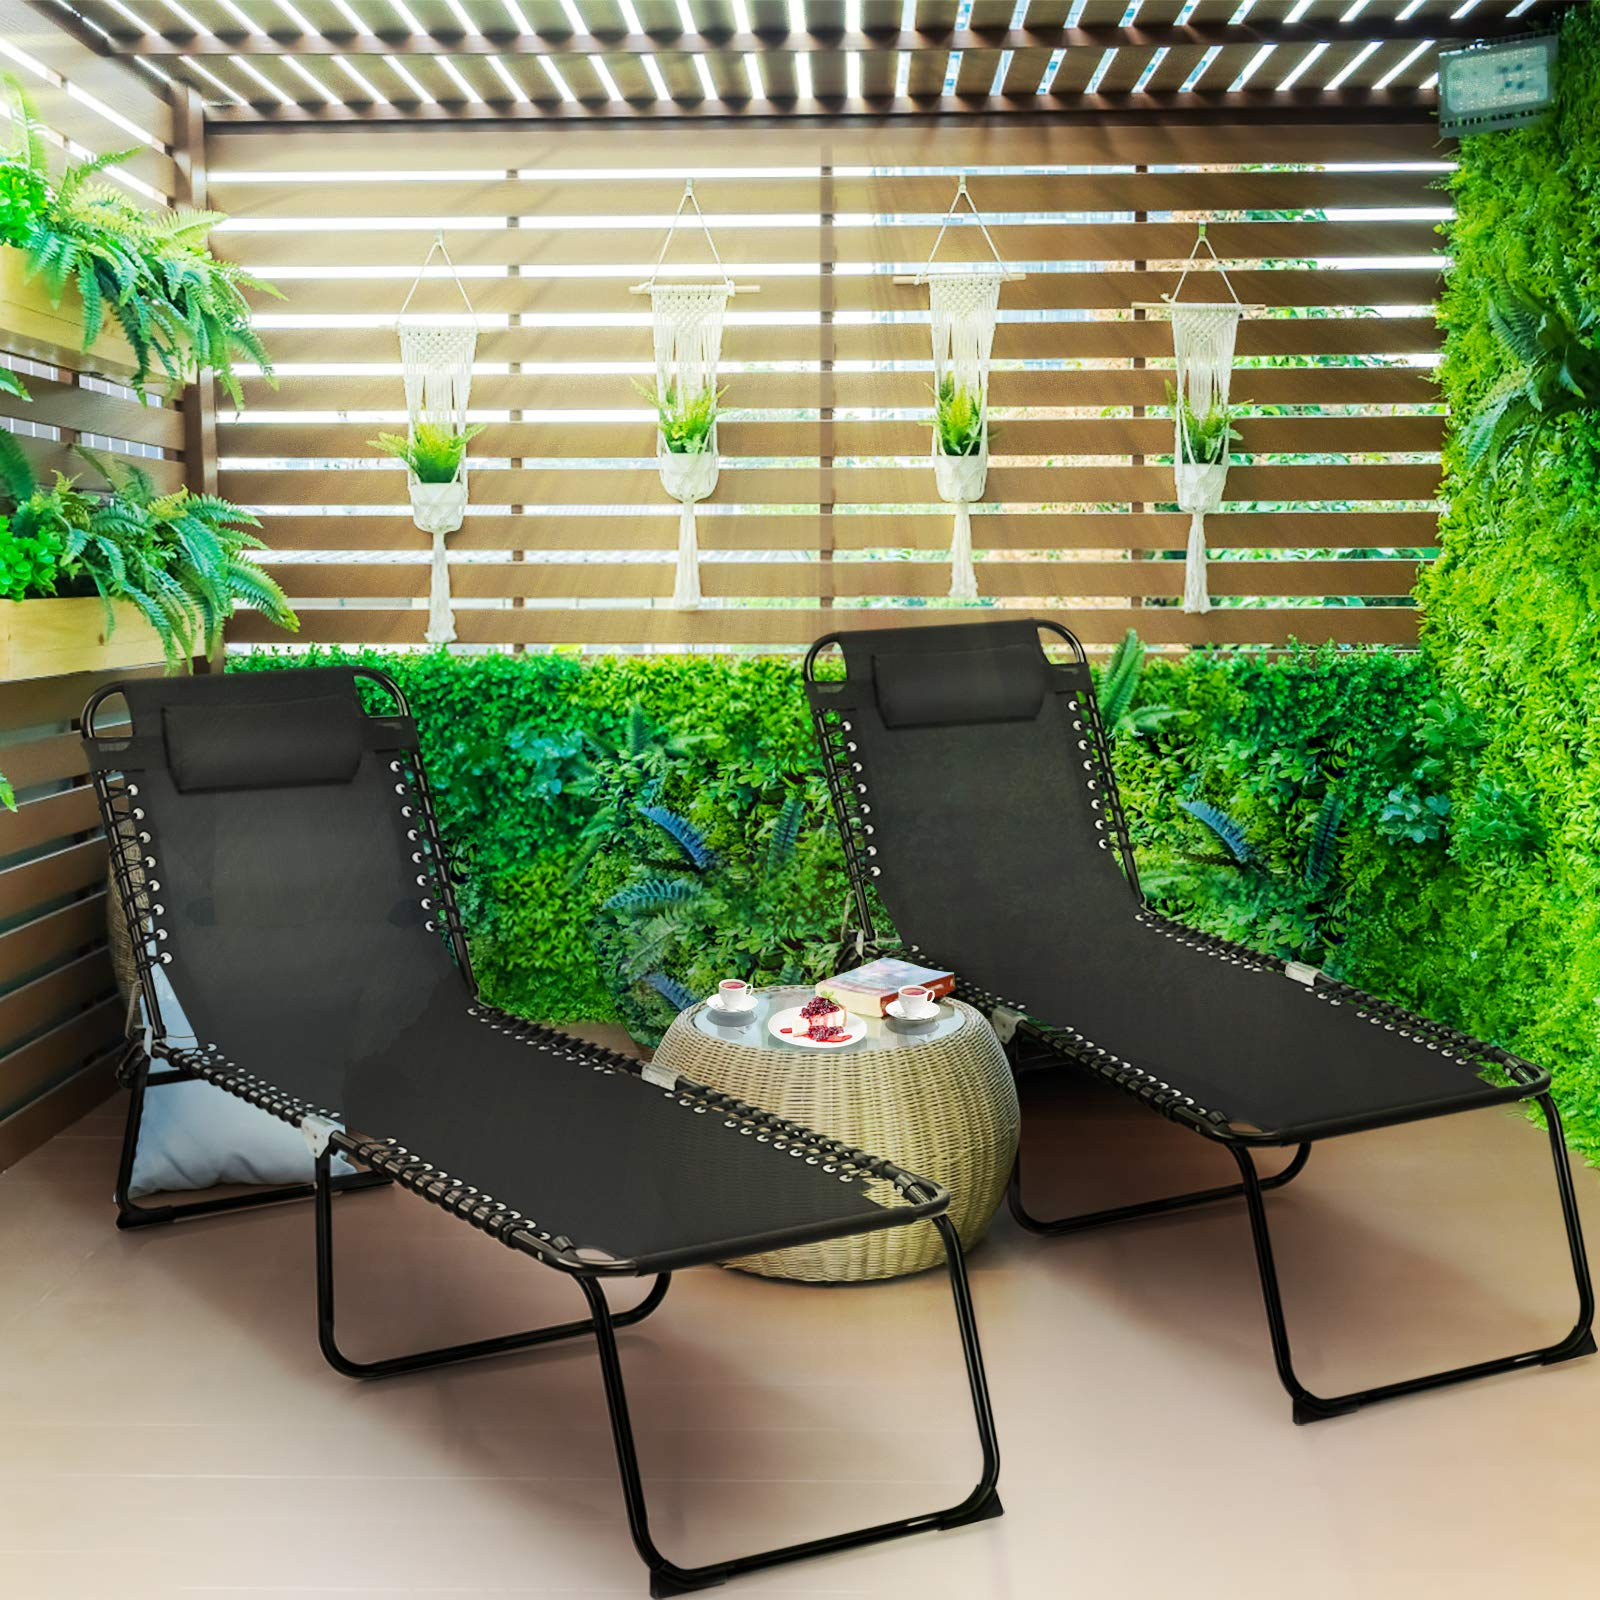 Giantex Outdoor Chaise Lounge Adjustable Sunbathing Seat